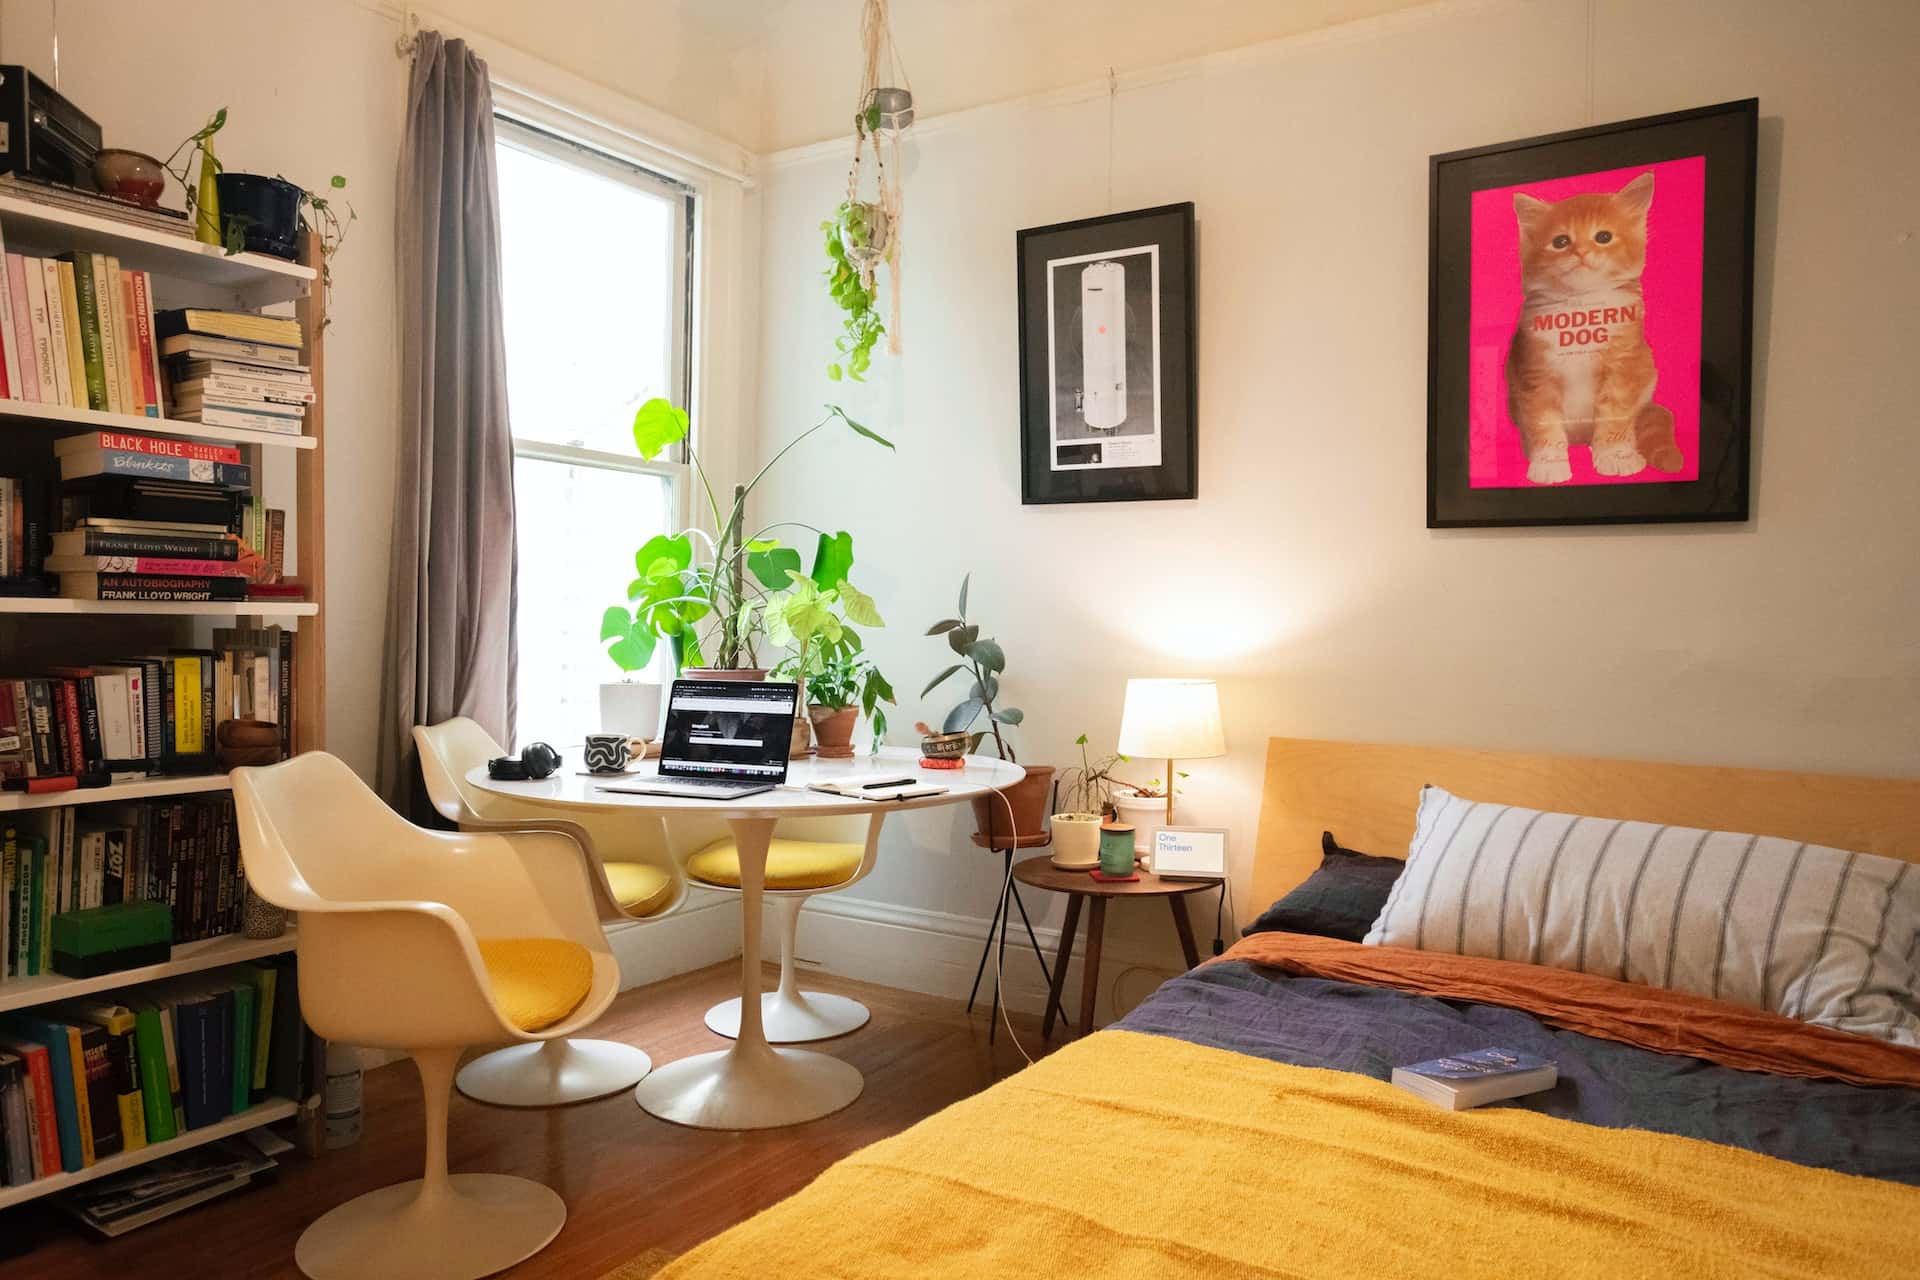 DIY Louis Vuitton plant wall  Fall bedroom decor, Cool dorm rooms, Dorm  room designs